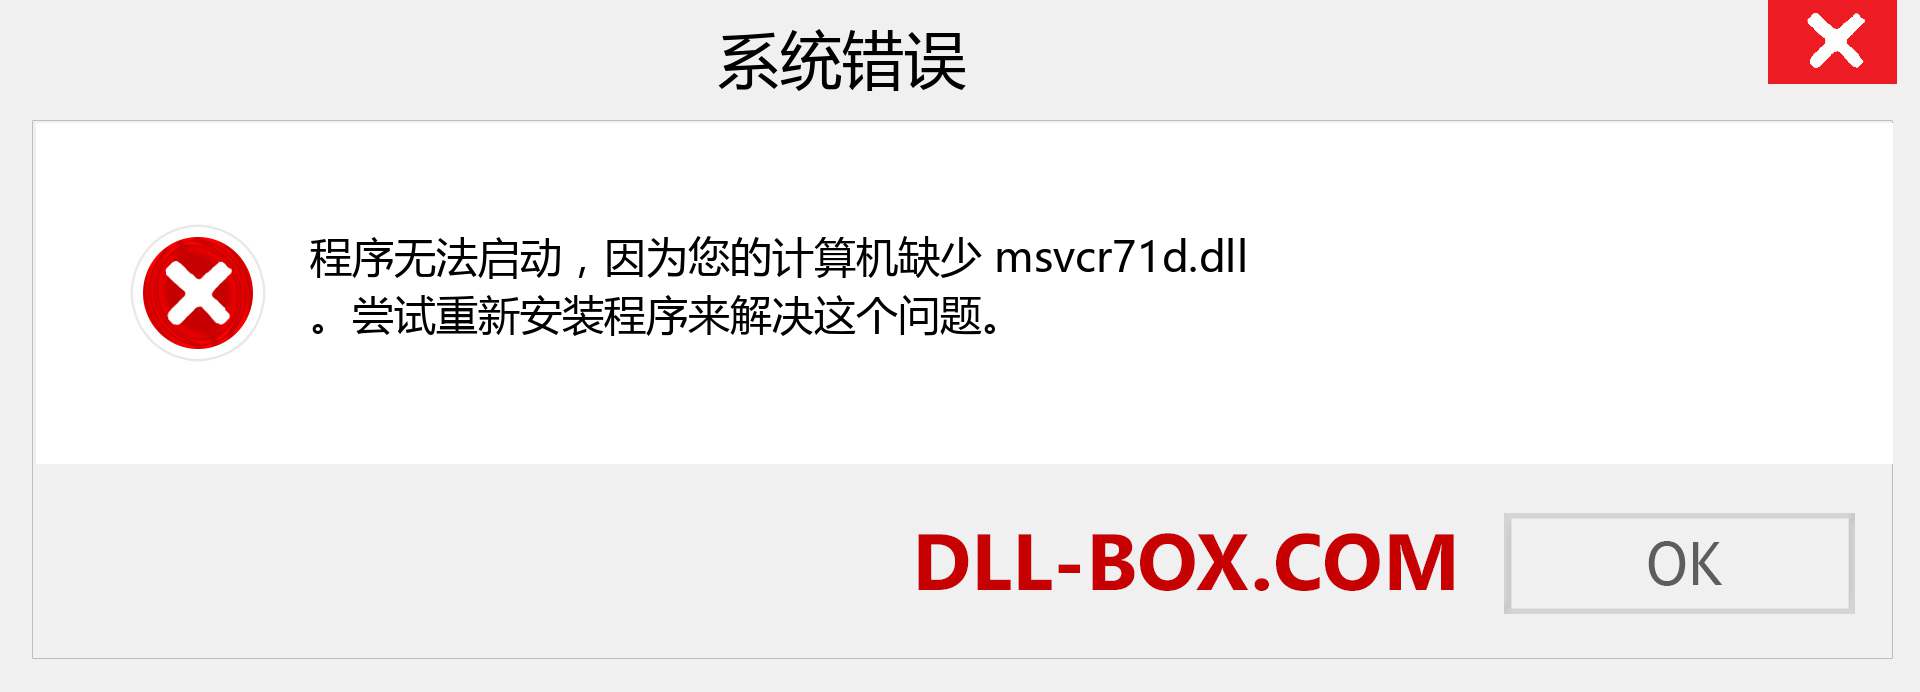 msvcr71d.dll 文件丢失？。 适用于 Windows 7、8、10 的下载 - 修复 Windows、照片、图像上的 msvcr71d dll 丢失错误